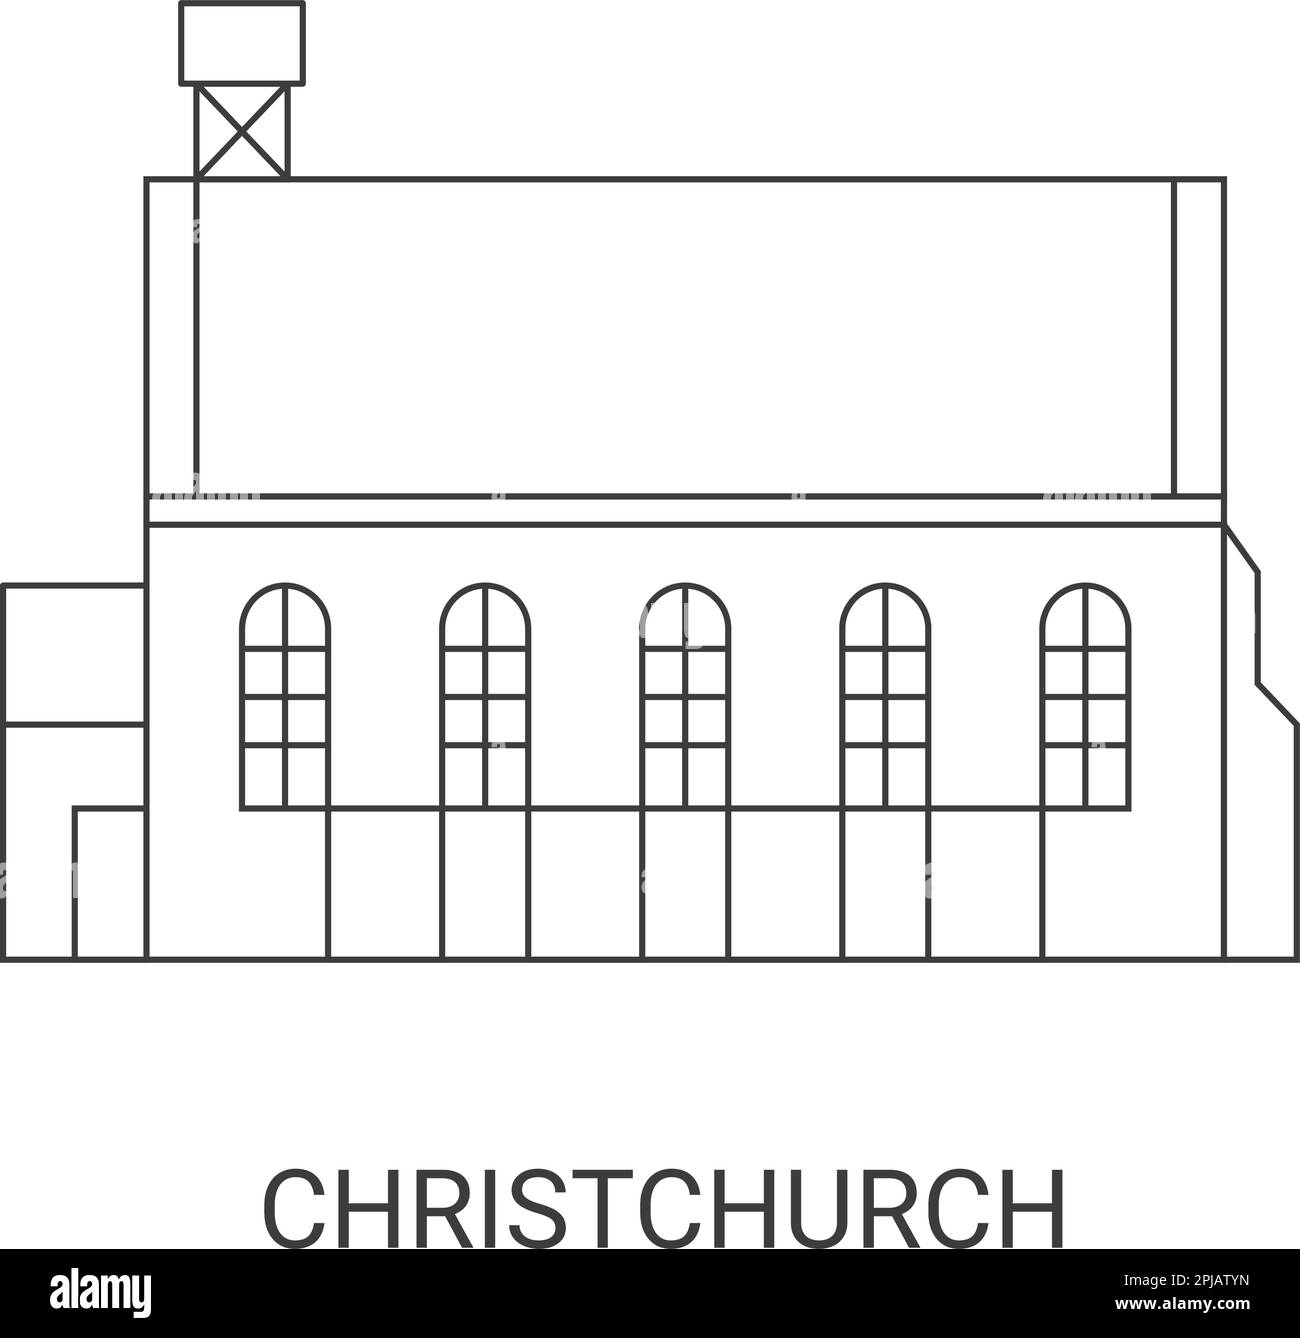 Illustration du vecteur du point de repère du voyage de Christchurch, Nouvelle-Zélande Illustration de Vecteur